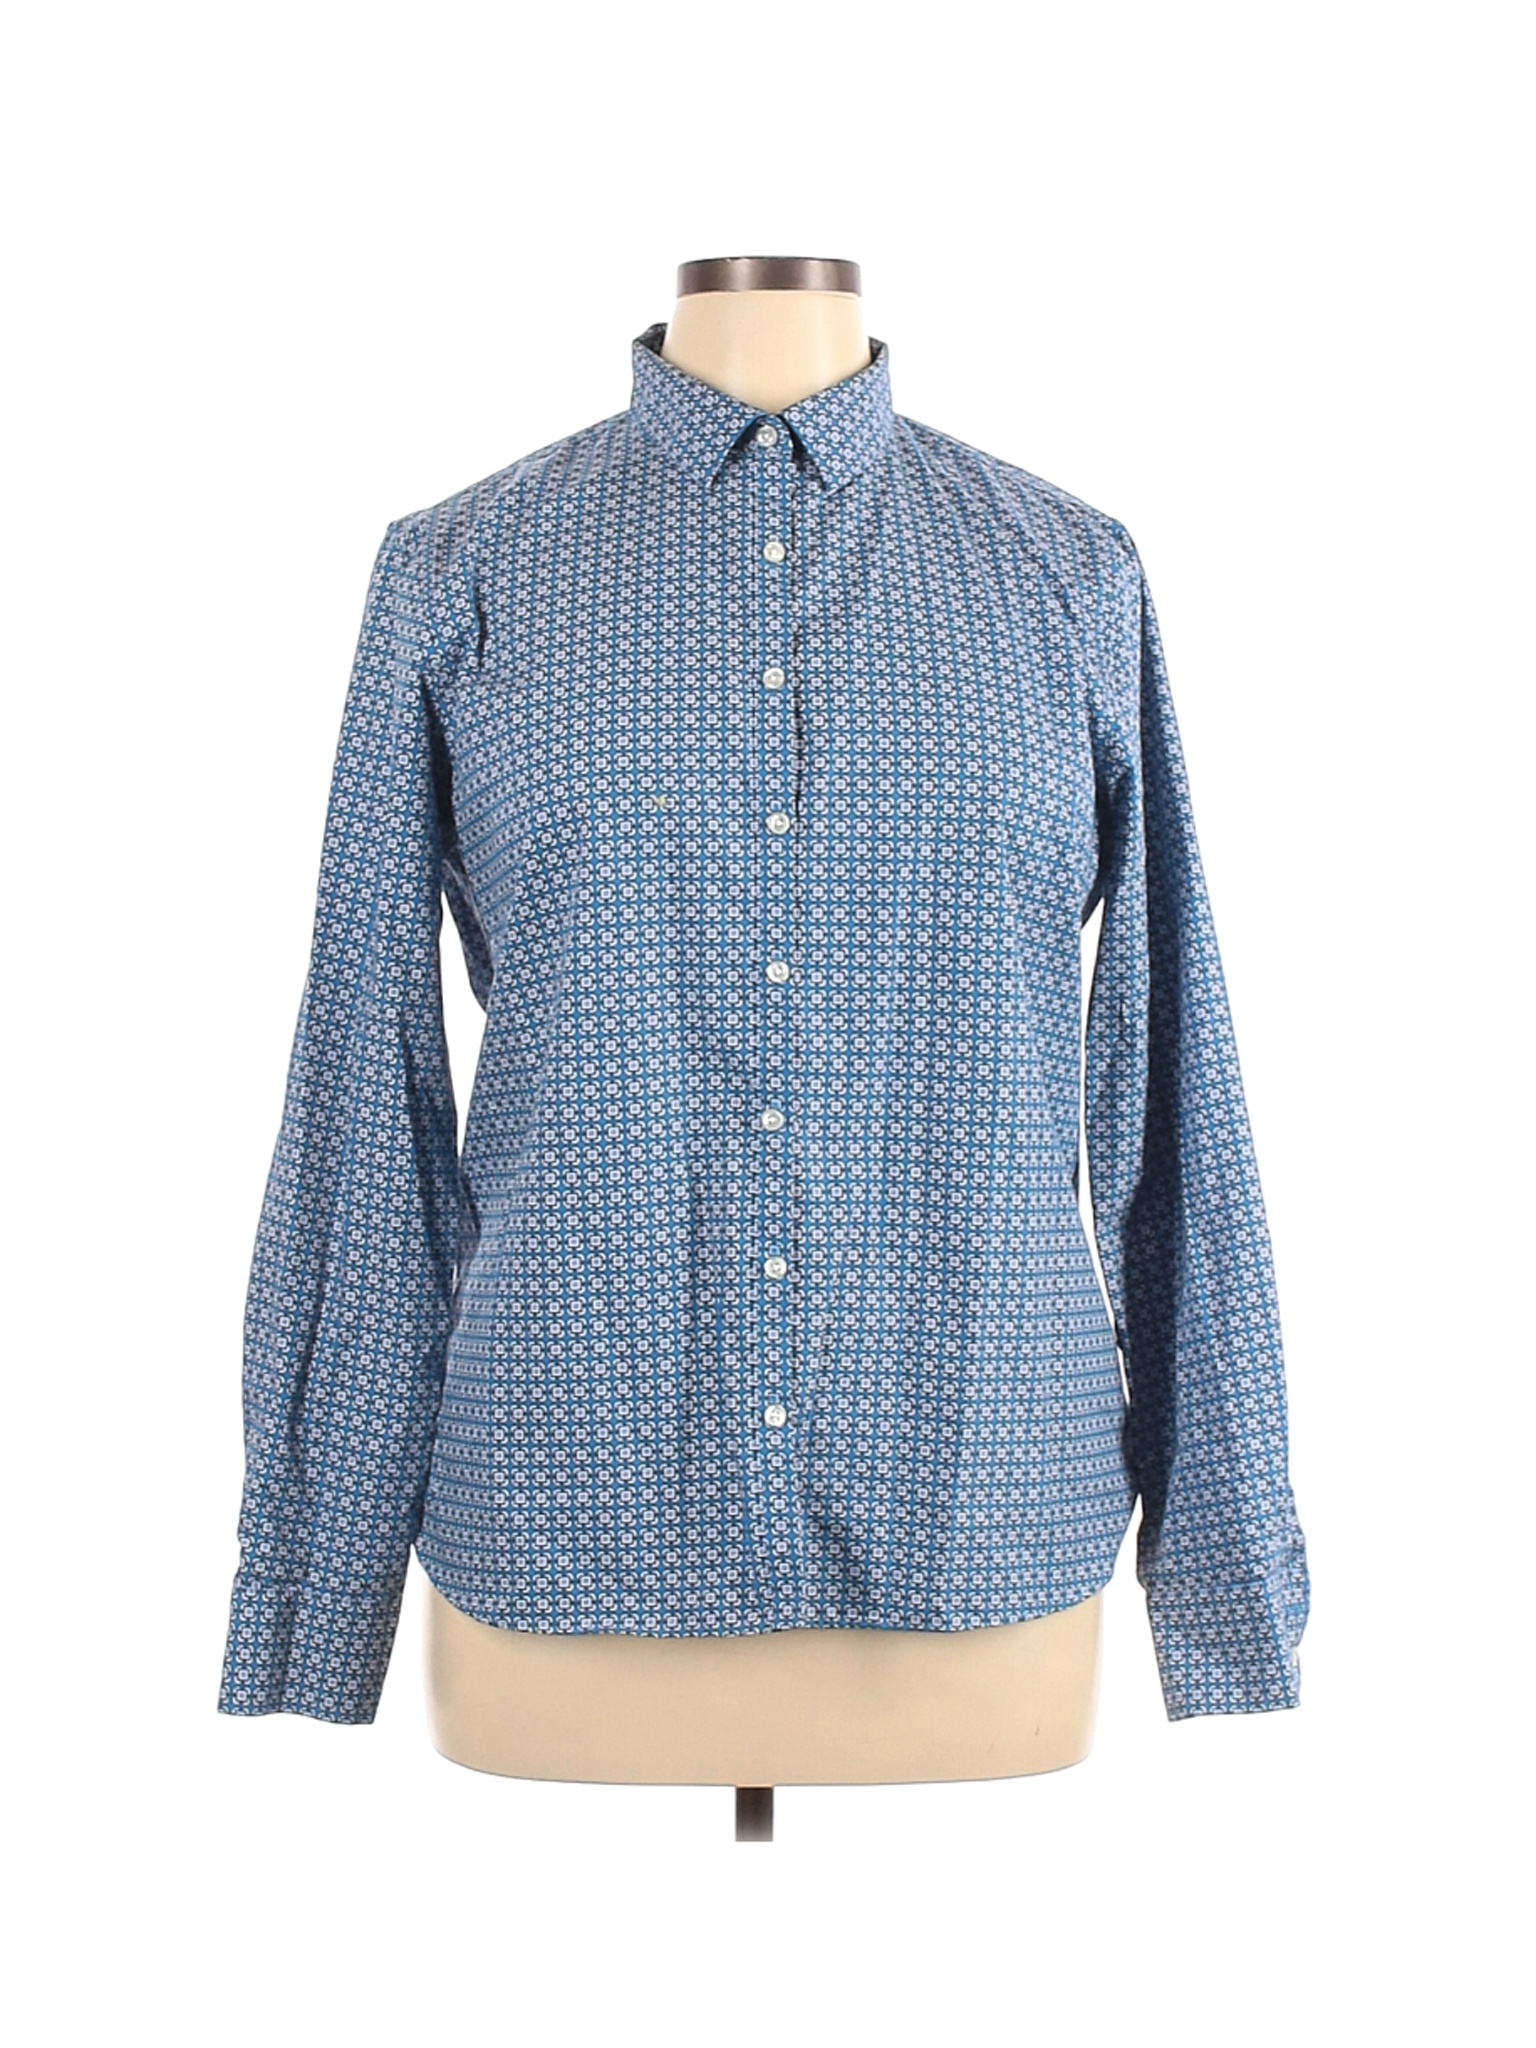 Lands' End Women Blue Long Sleeve Button-Down Shirt 16 | eBay